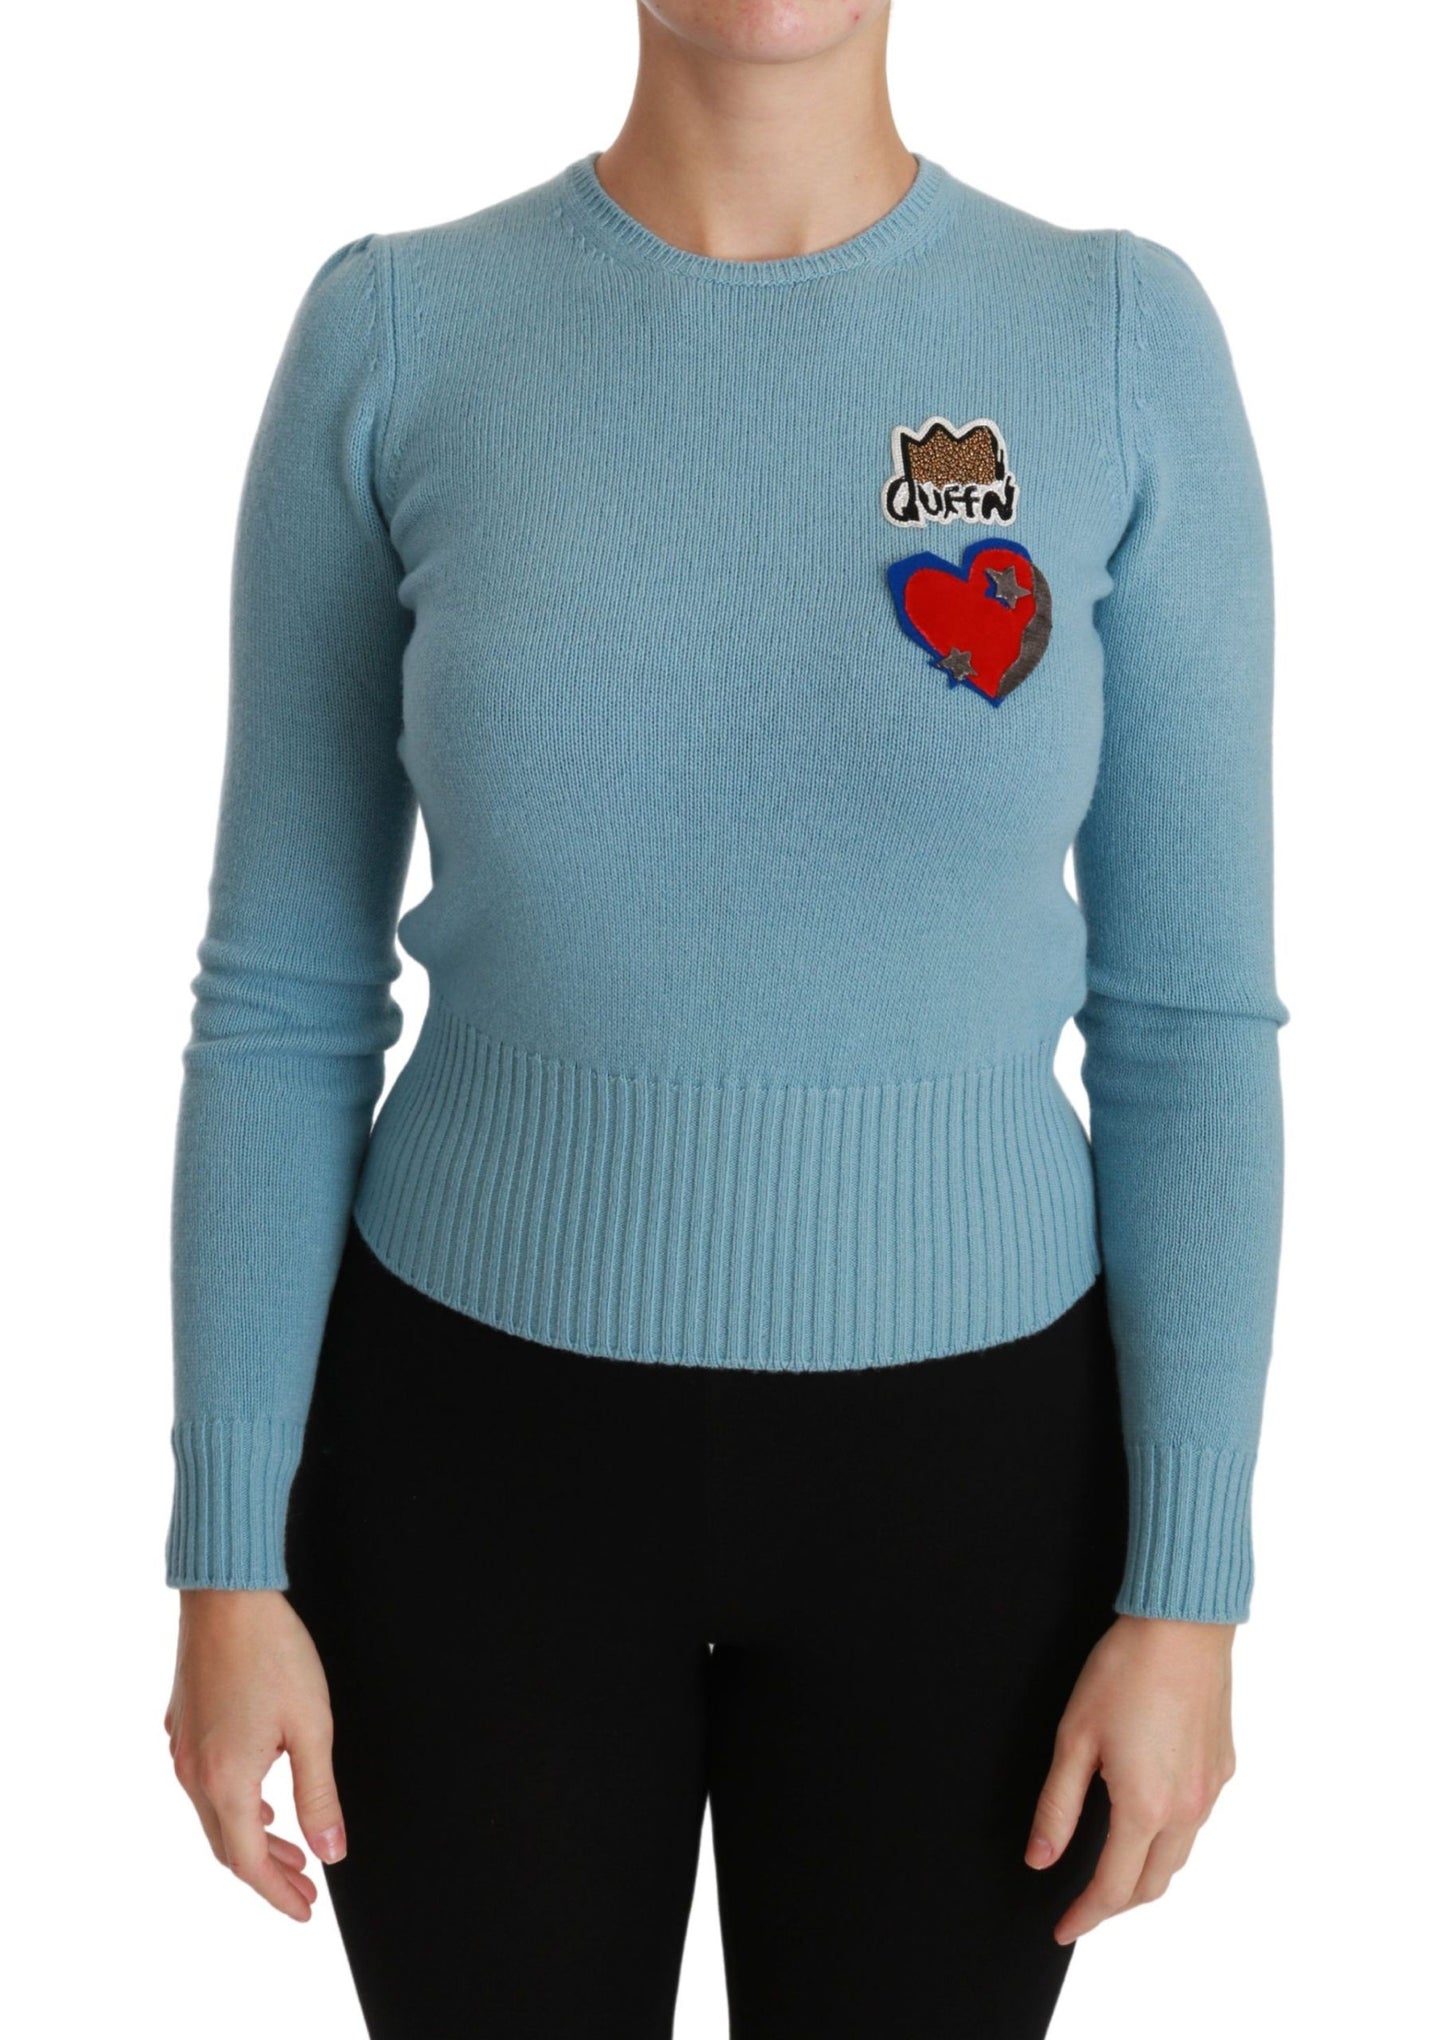 Queen Heart Beaded Wool Sweater